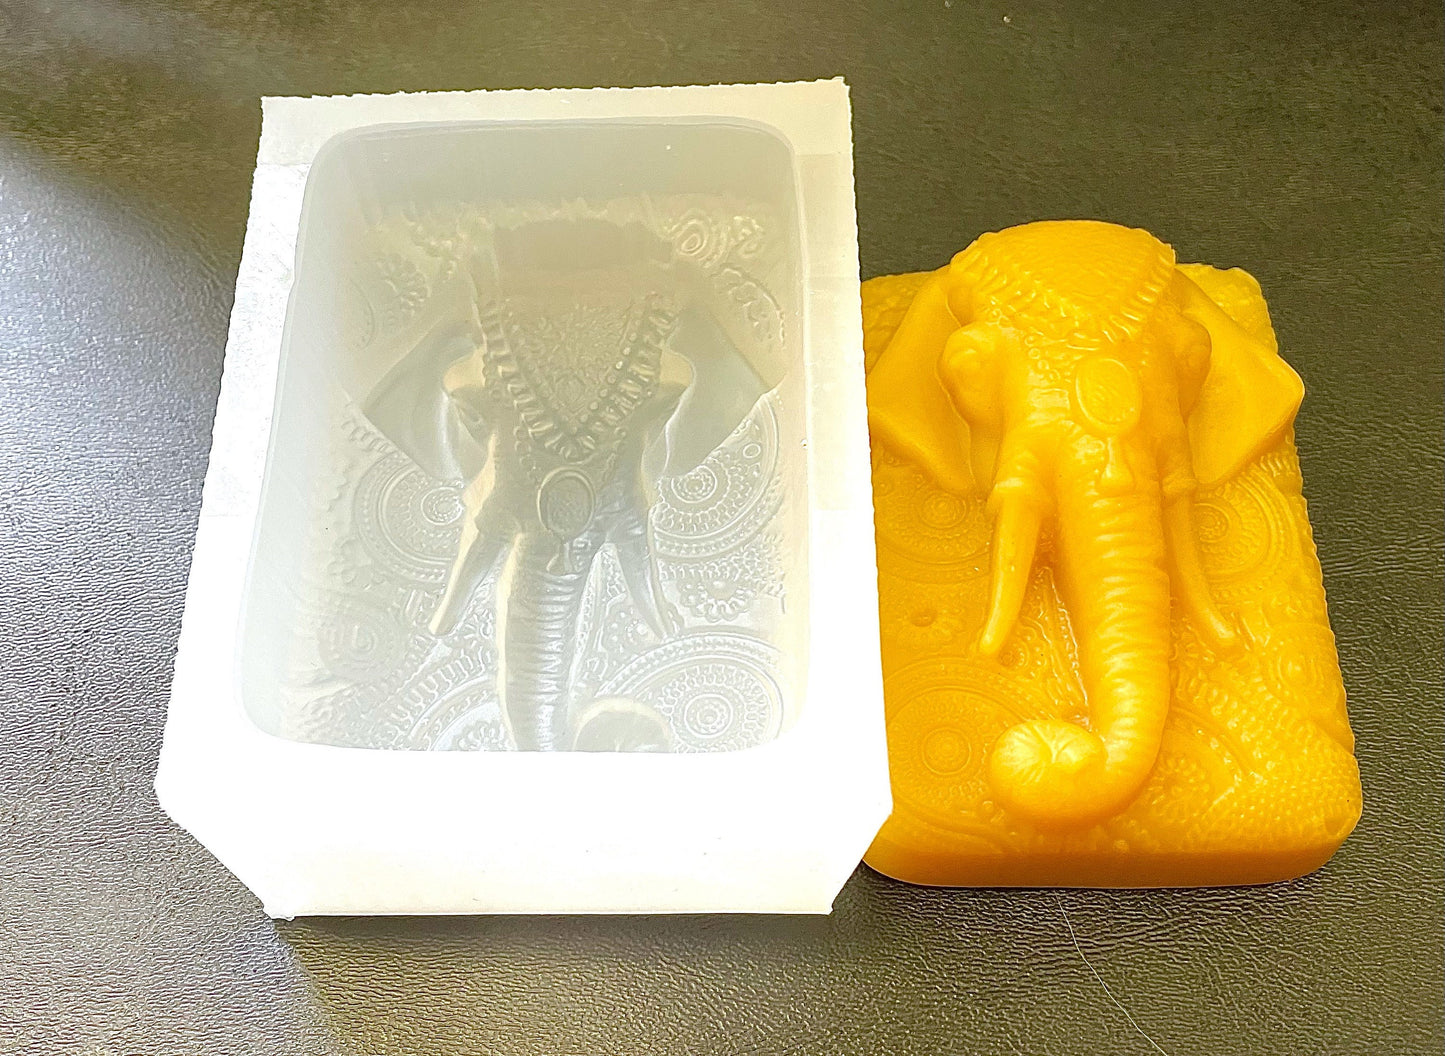 Silicone elephant Mold - elaphant soap mold - silicone soap mold - homemade silicone mold - indian elephant